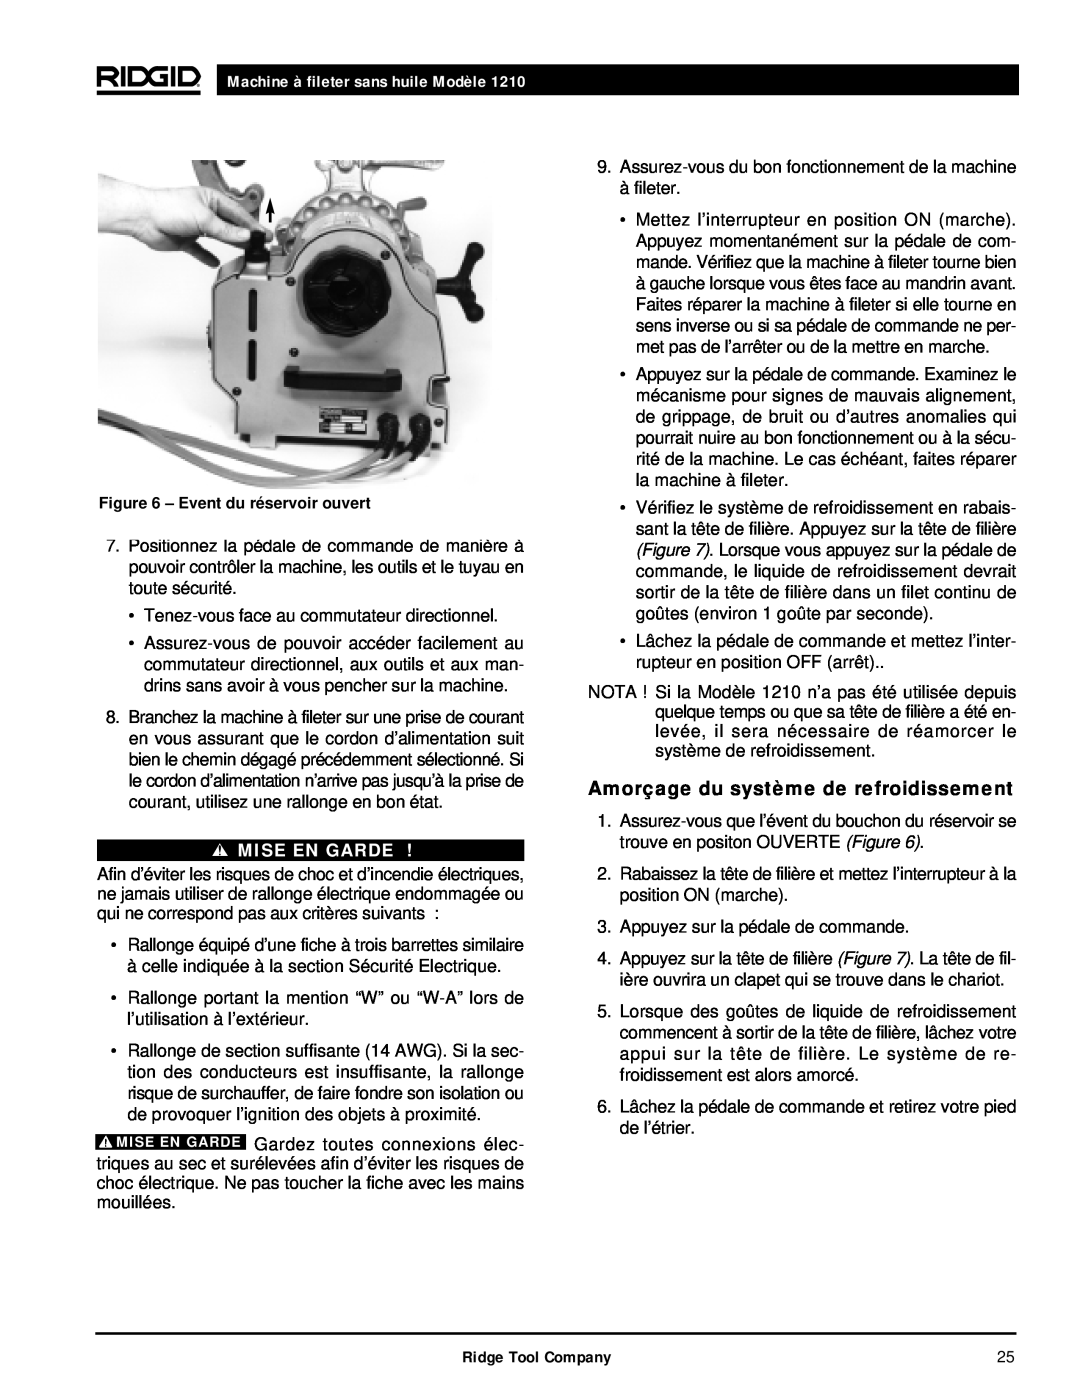 RIDGID 1210 manual Amorçage du système de refroidissement, Machine à fileter sans huile Modèle, Mise En Garde 